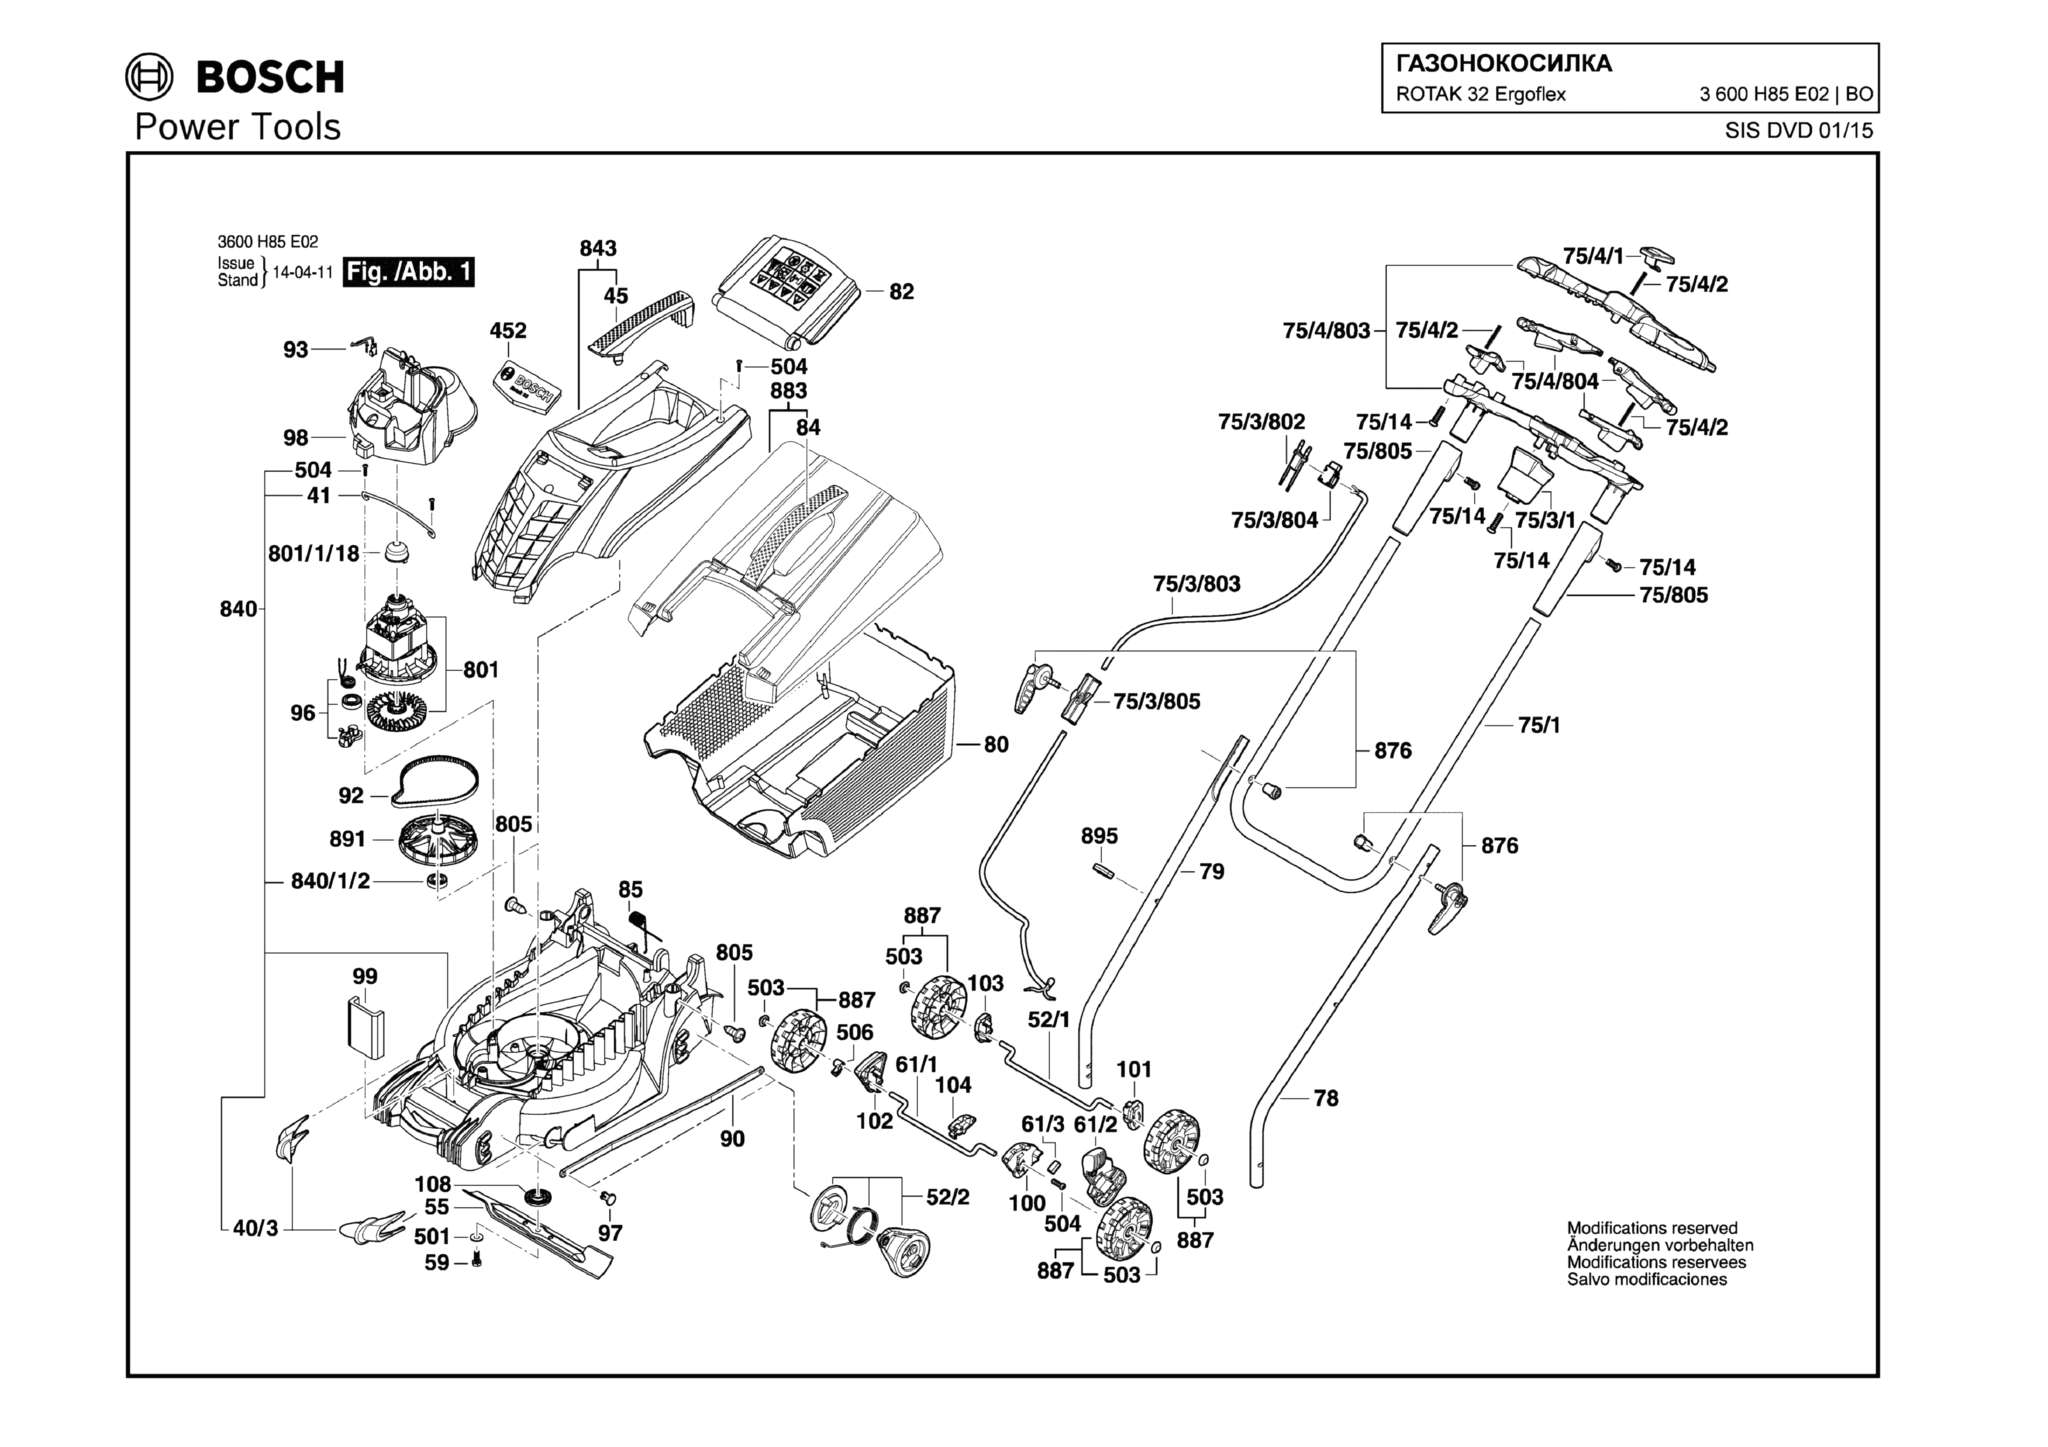 Запчасти, схема и деталировка Bosch ROTAK 32 ERGOFLEX (ТИП 3600H85E02)